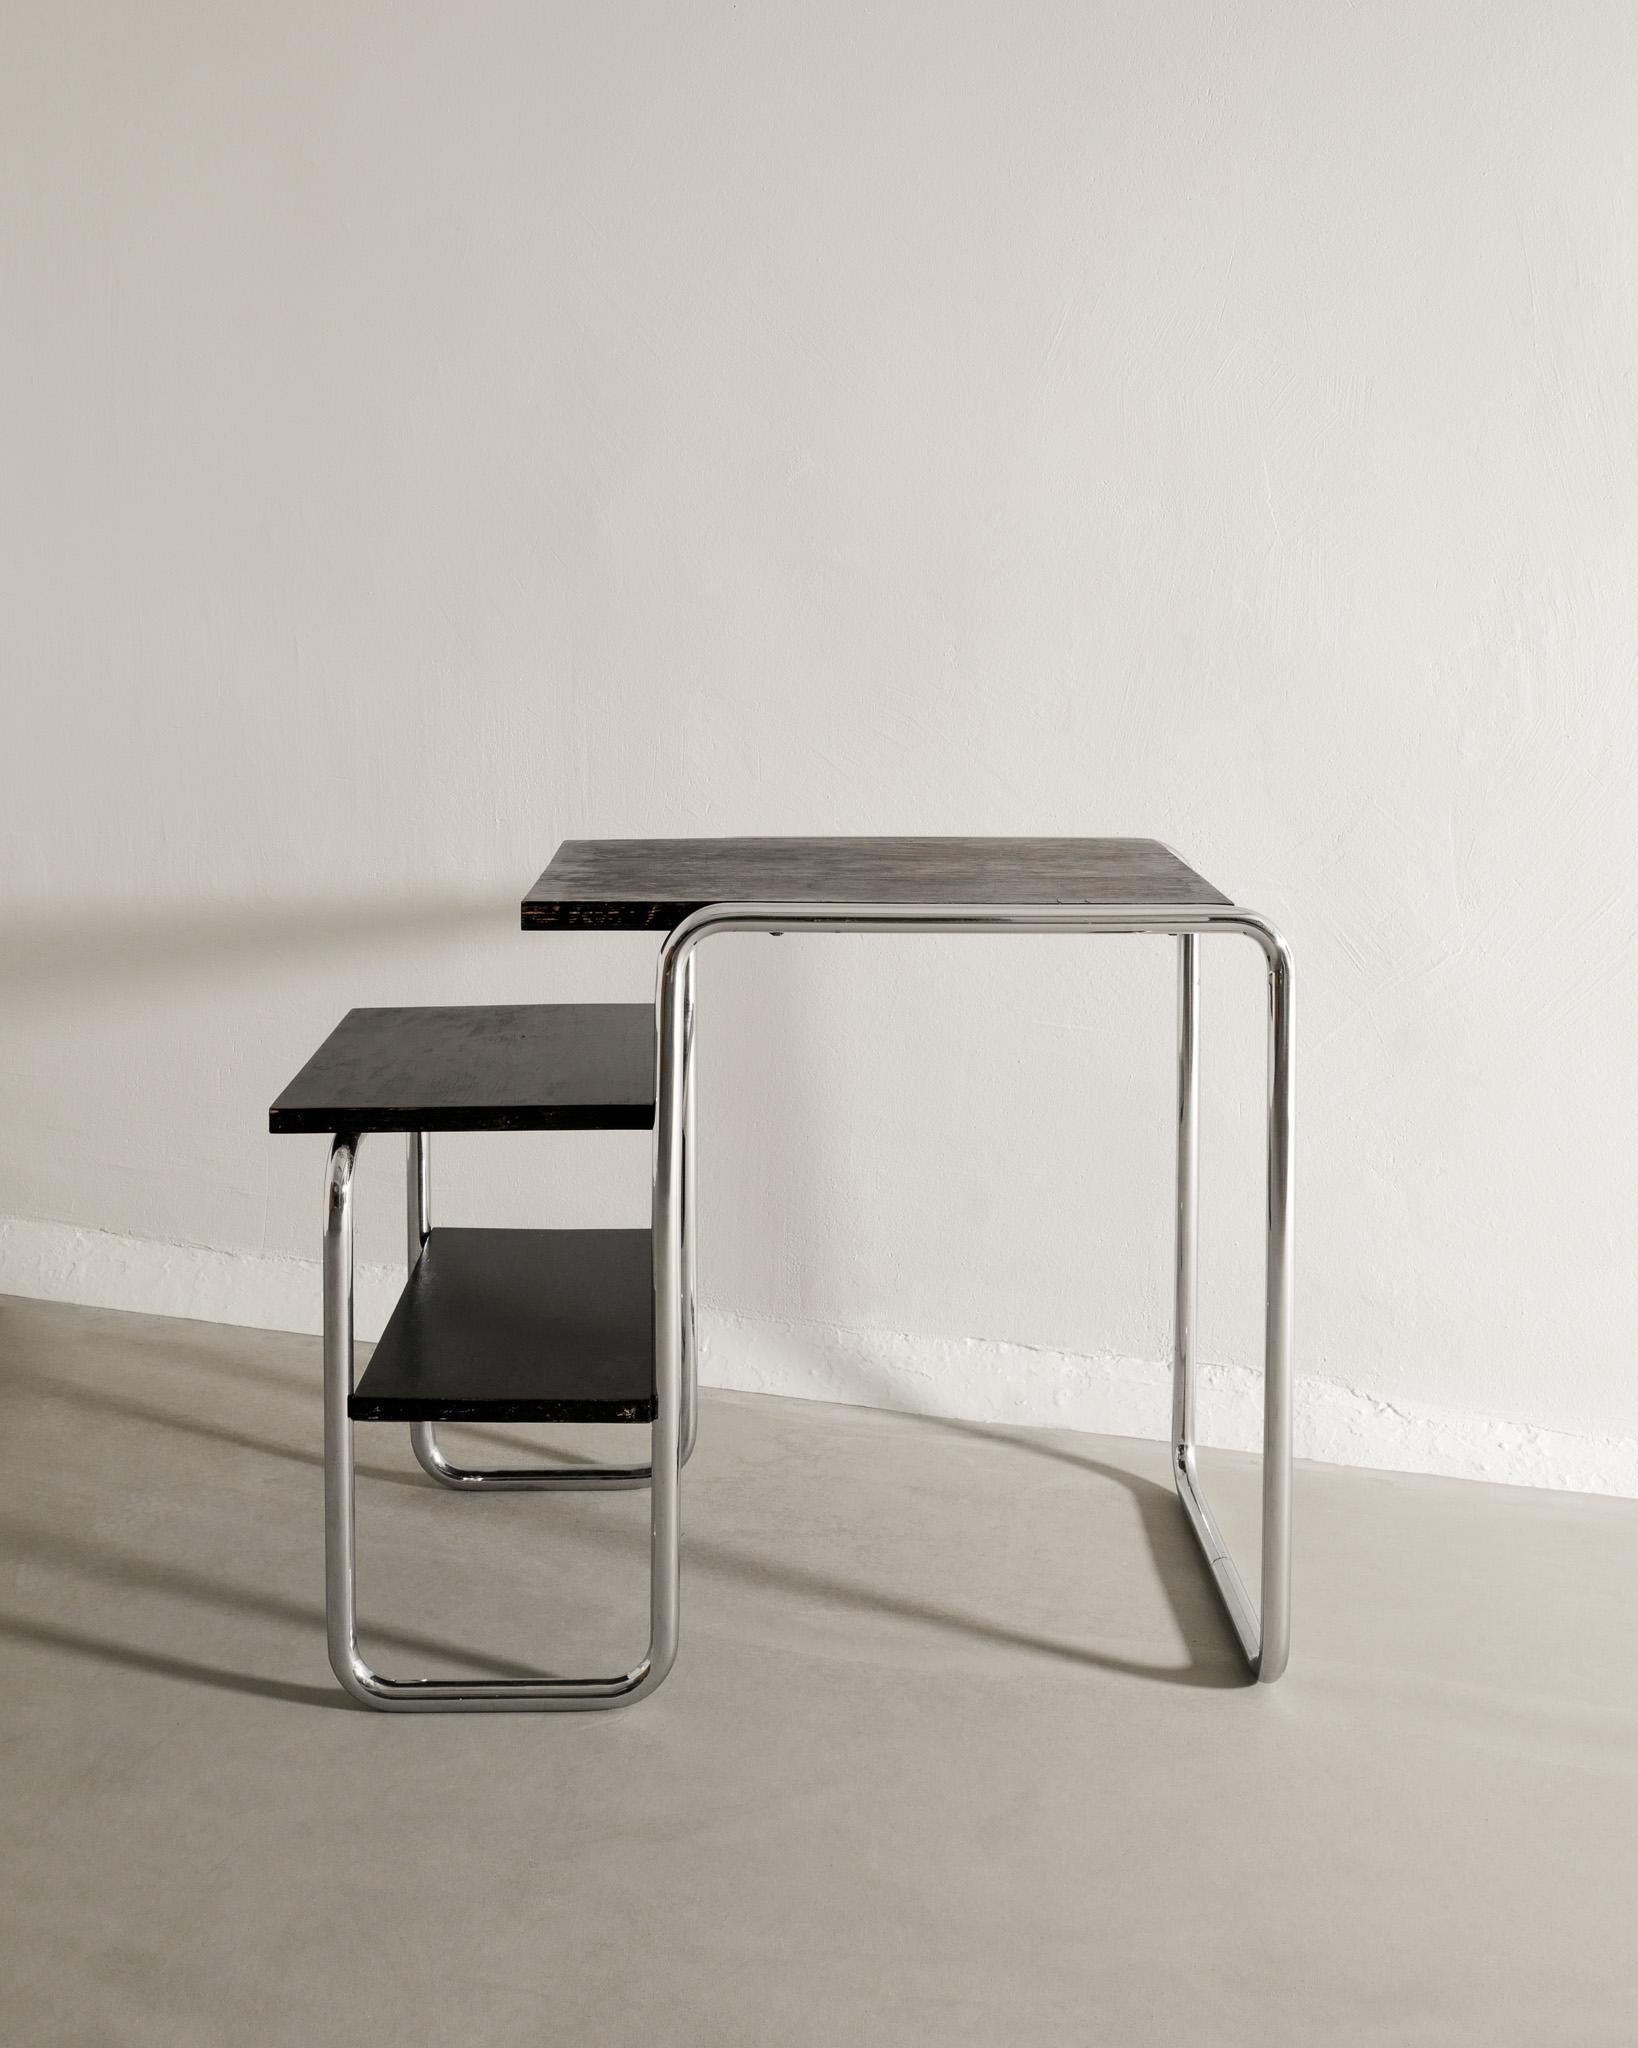 Très rare et précoce bureau / table d'appoint Bauhaus 